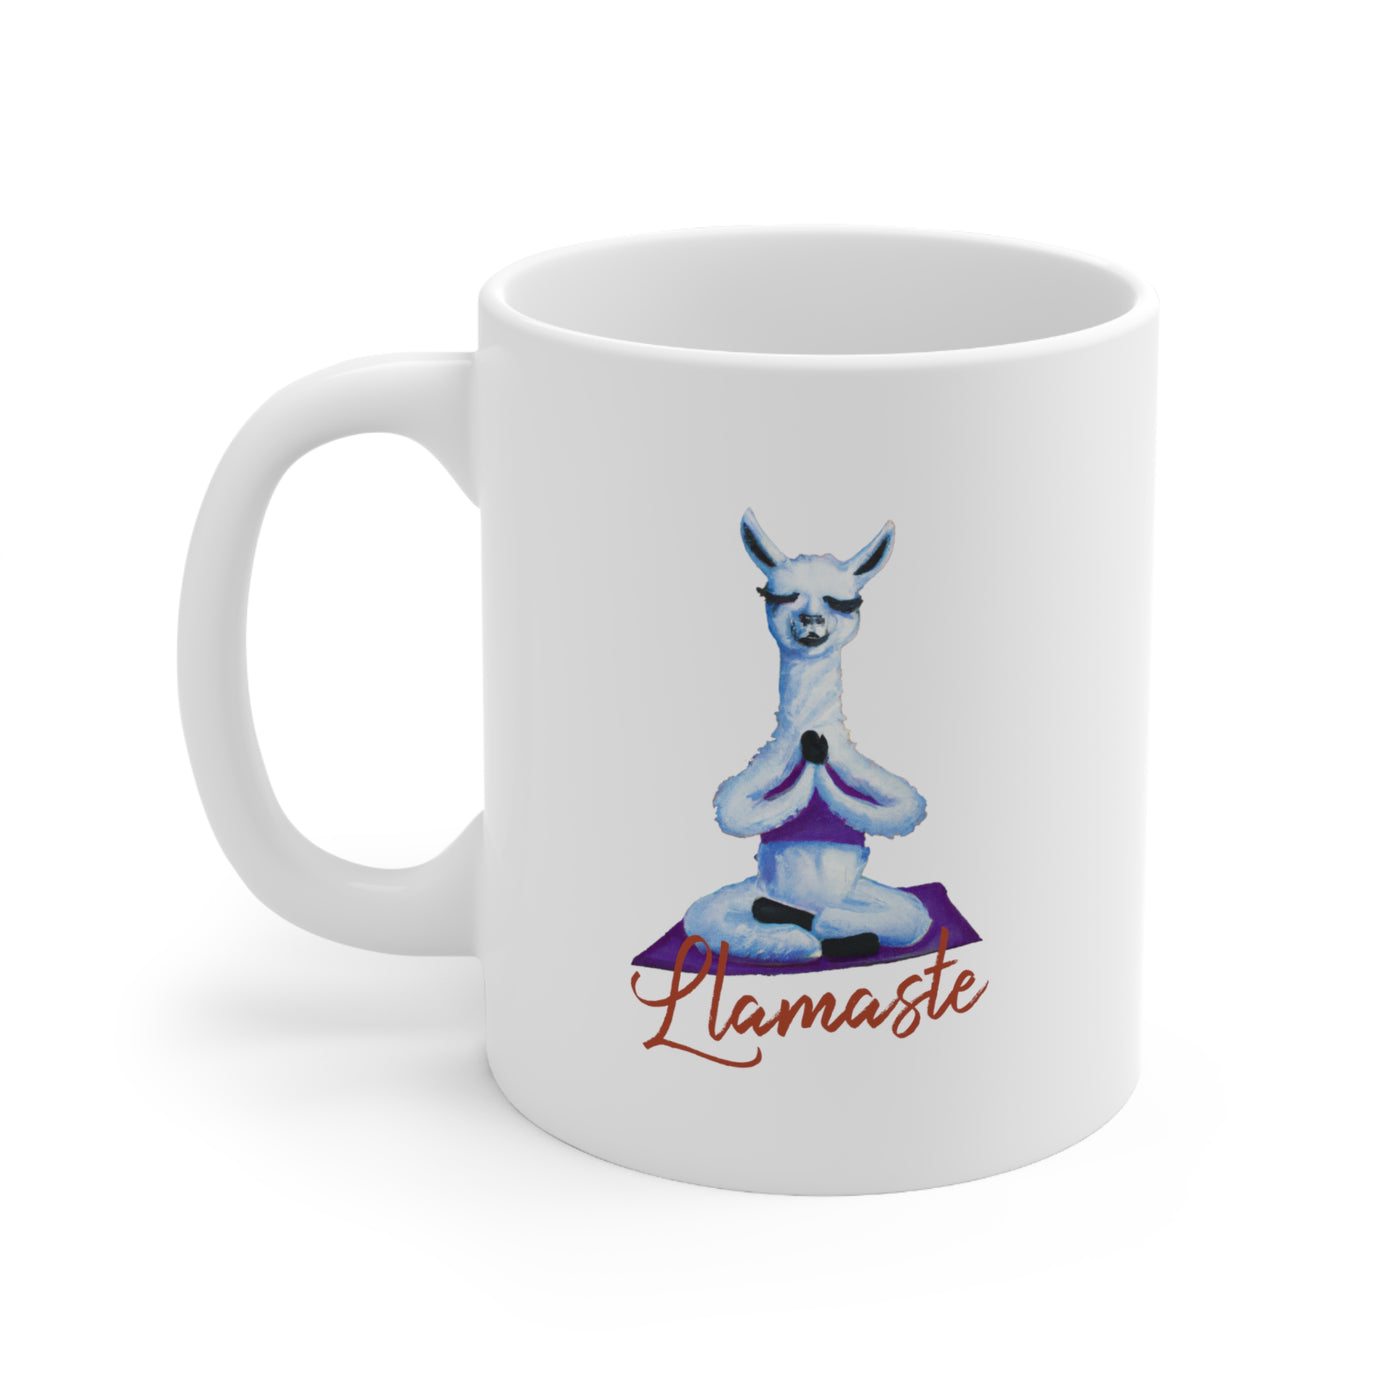 Llamaste 11oz Ceramic Mug